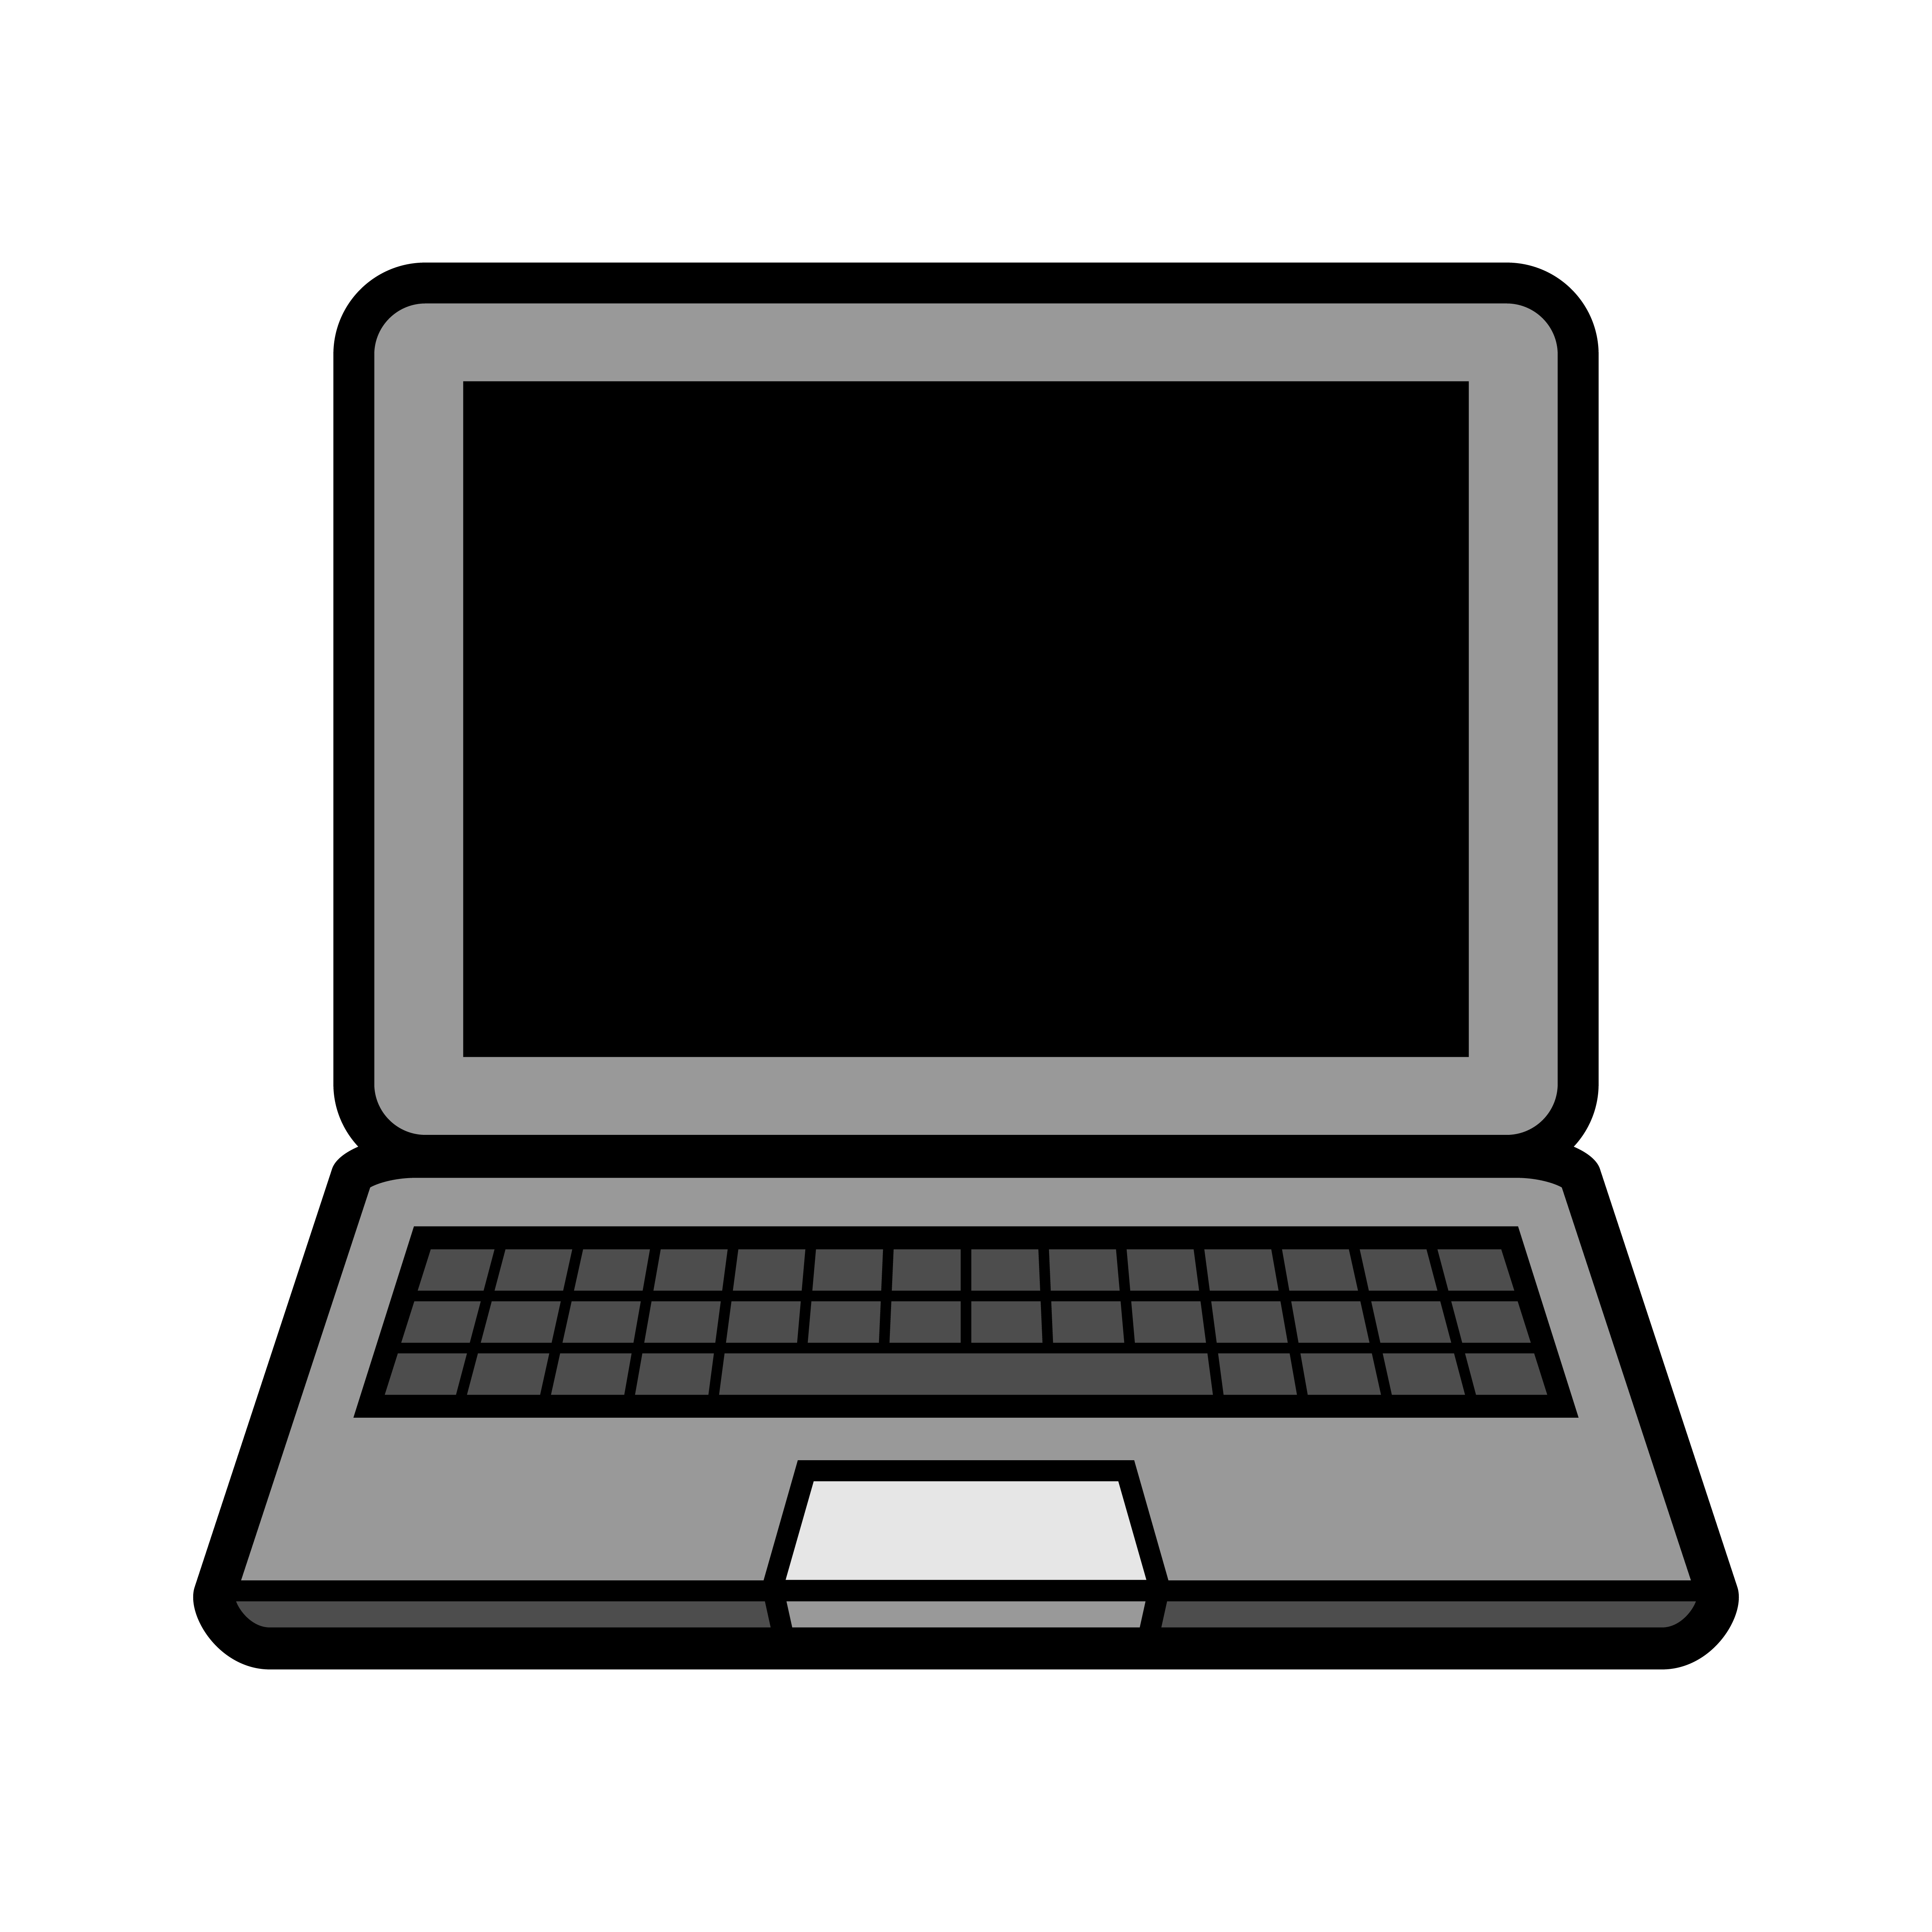 Laptop Computer Vector Icon 551198 Download Free Vectors